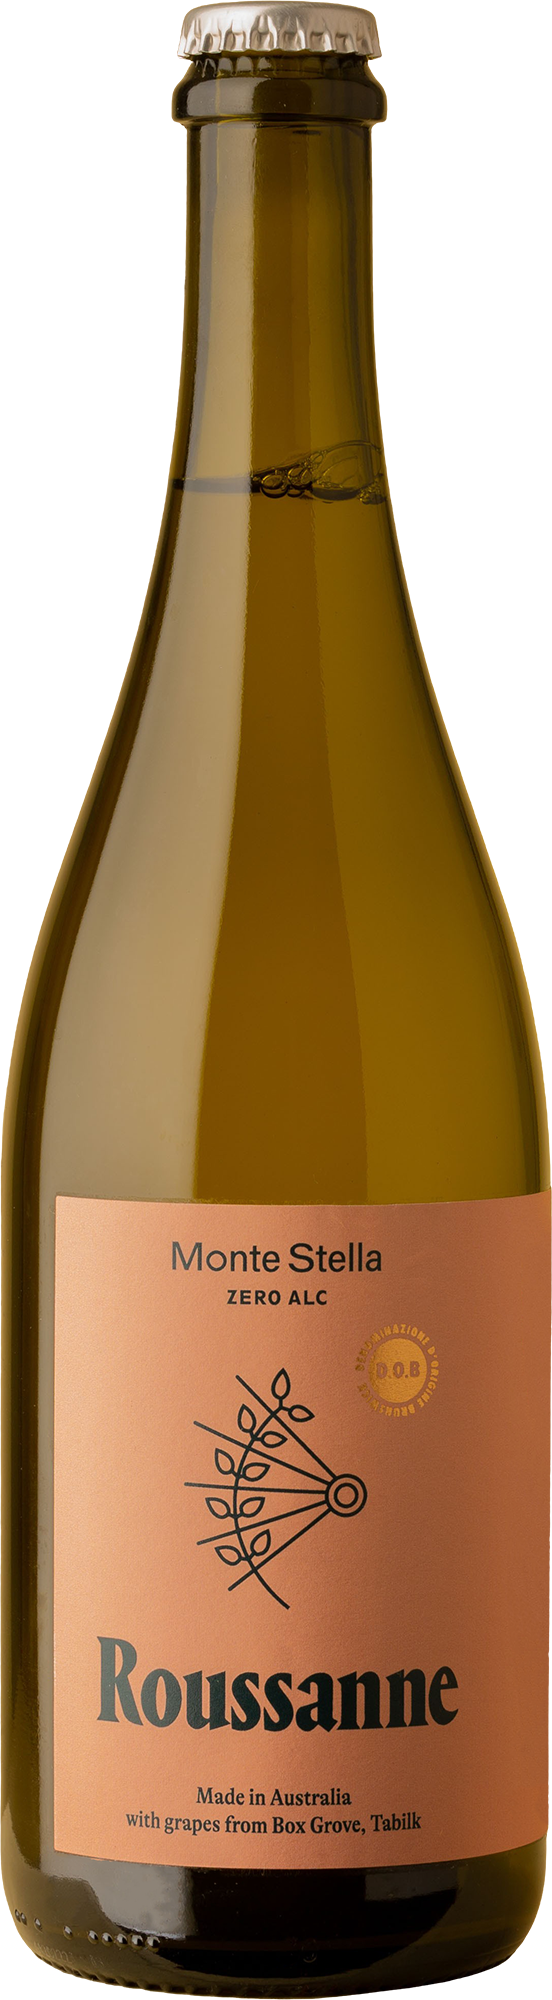 Monceau - Roussane Non-Alc Spritz Not Wine